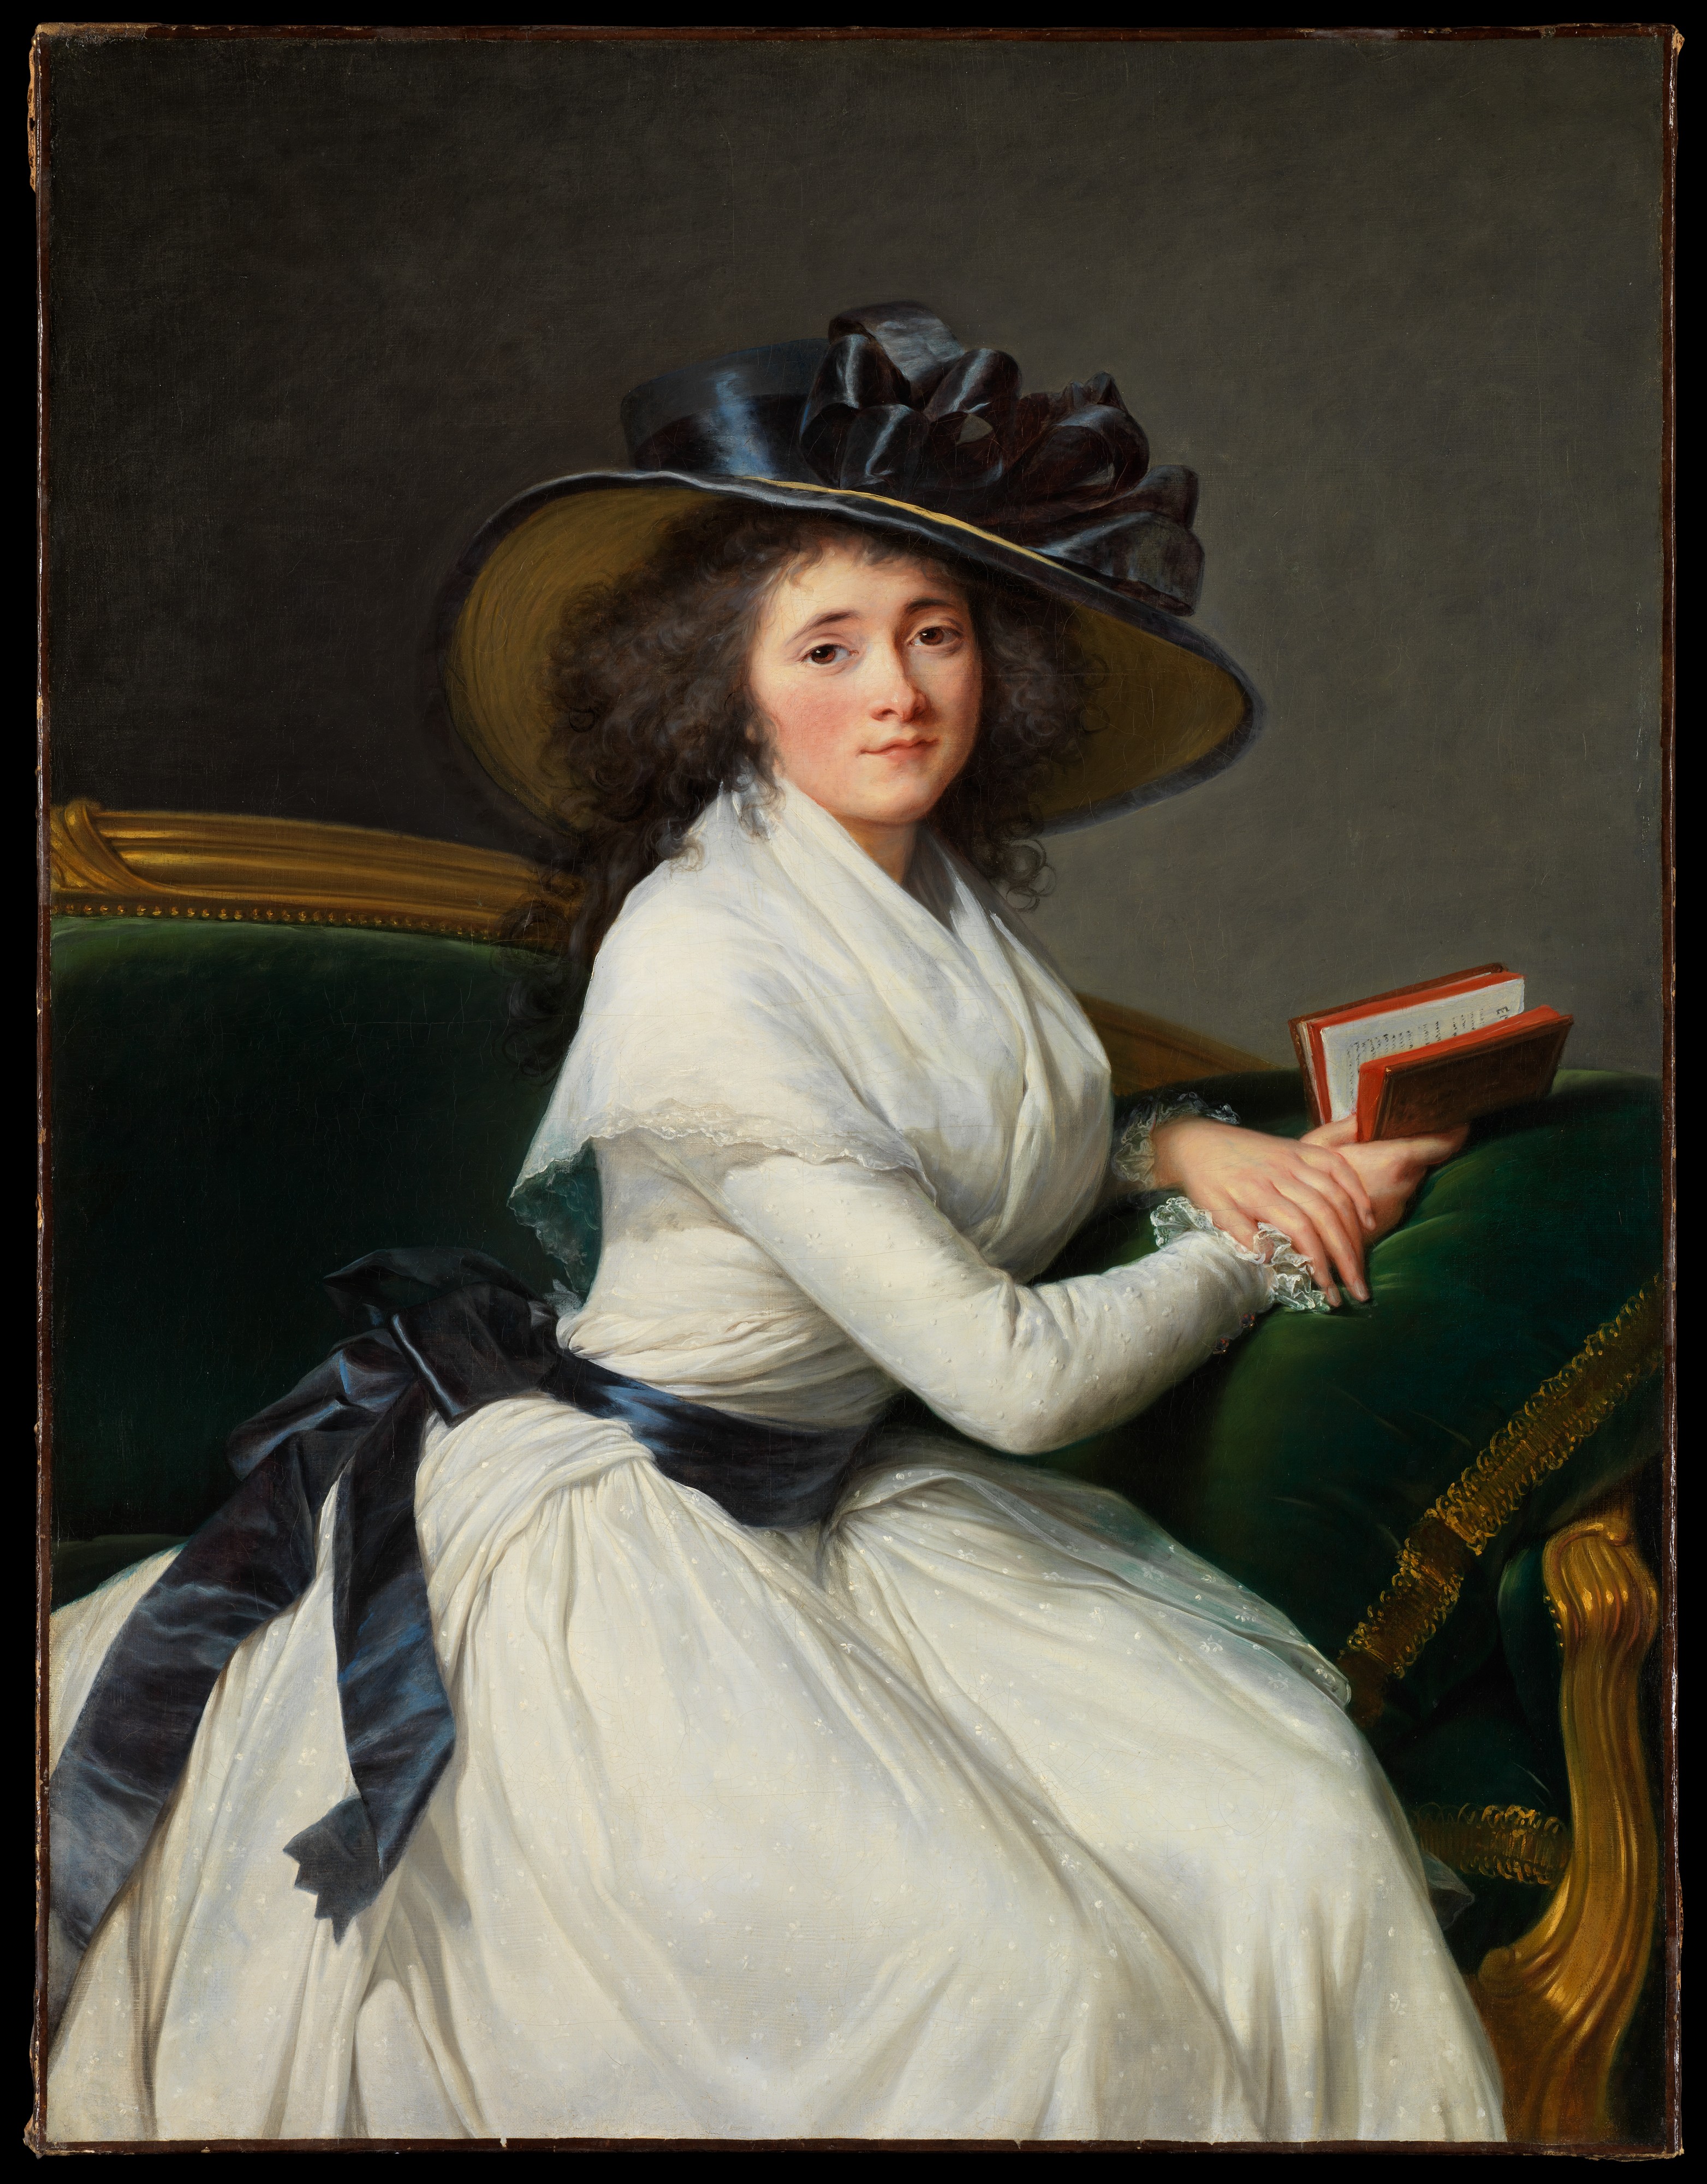 Comtesse de la Châtre by Élisabeth Vigee Le Brun - 1789 - 114.3 x 87.6 cm Metropolitan Museum of Art